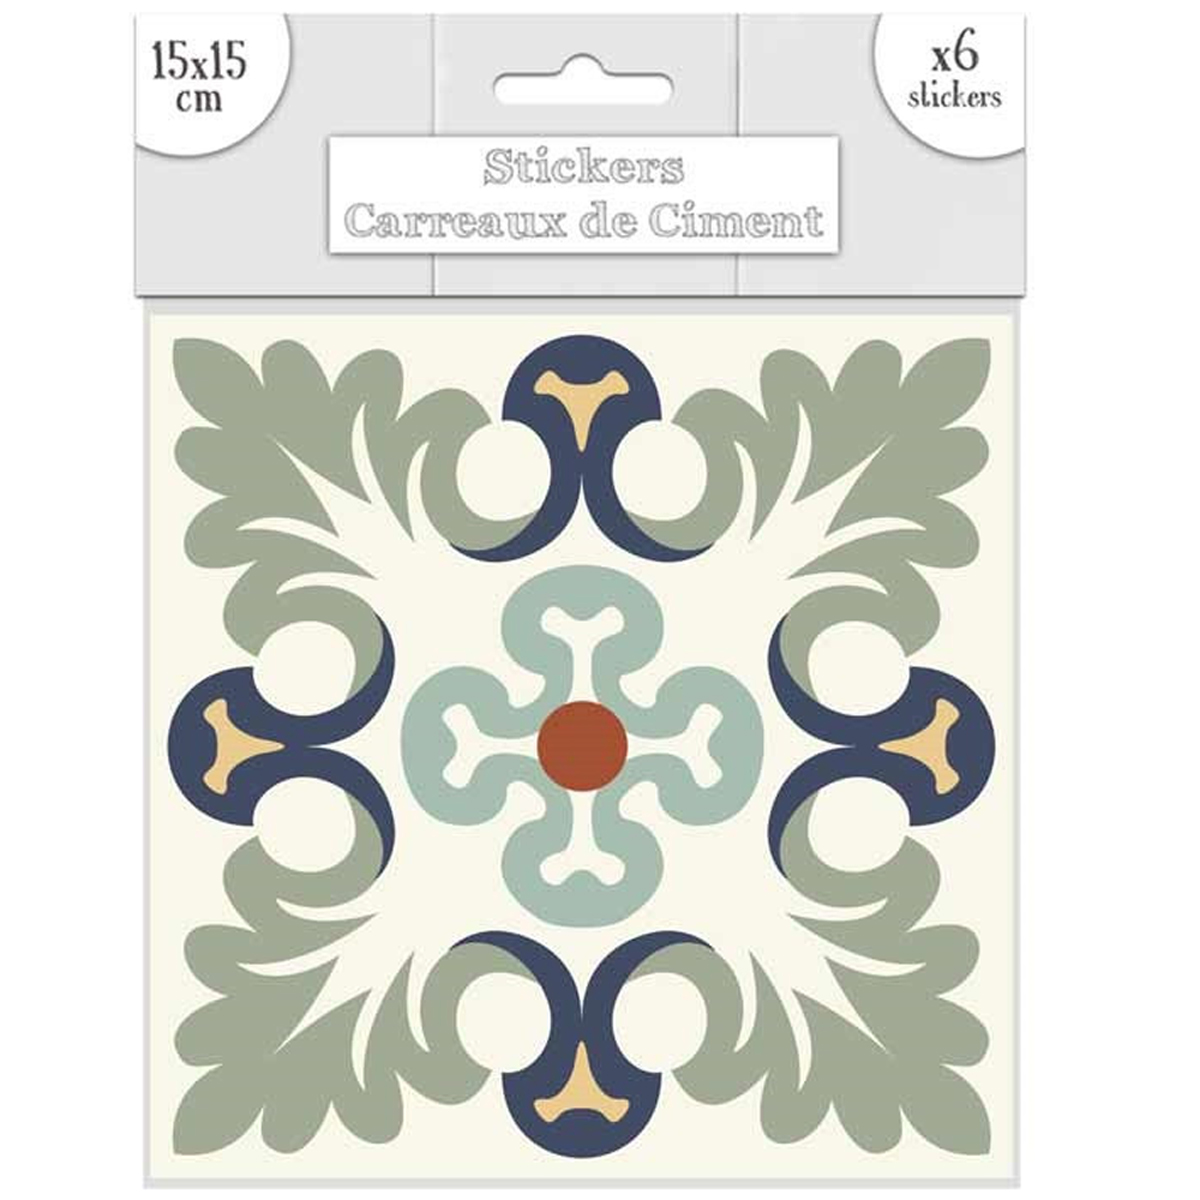 Set de 6 stickers \'Carreaux de Ciment\' vert marine - 15x15 cm - [R2206]